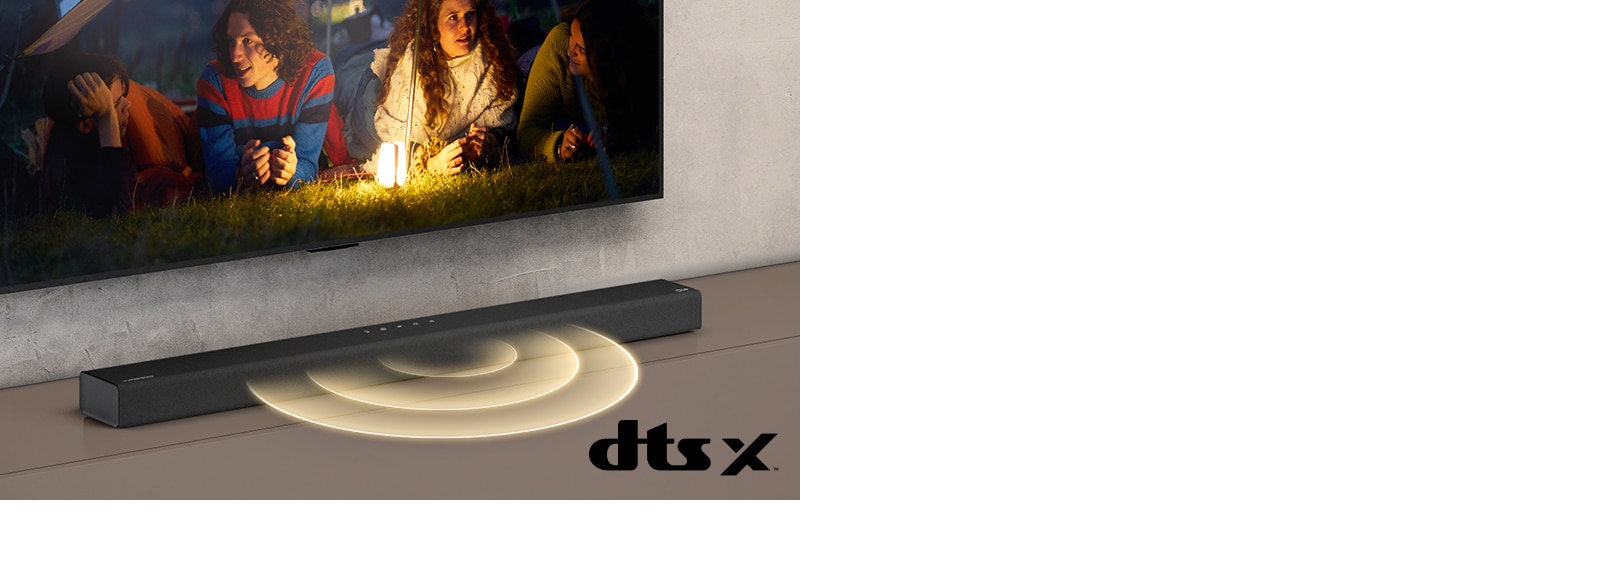 A falra szerelt LG TV képernyőjén két pár fekszik a füvön. Előttük egy lámpa látható. Az LG hangprojektor az LG TV alatt helyezkedik el. Hangot jelképező grafika érkezik a hangprojektor elejéből. A kép jobb alsó sarkában a DTS Virtual:X logó látható.